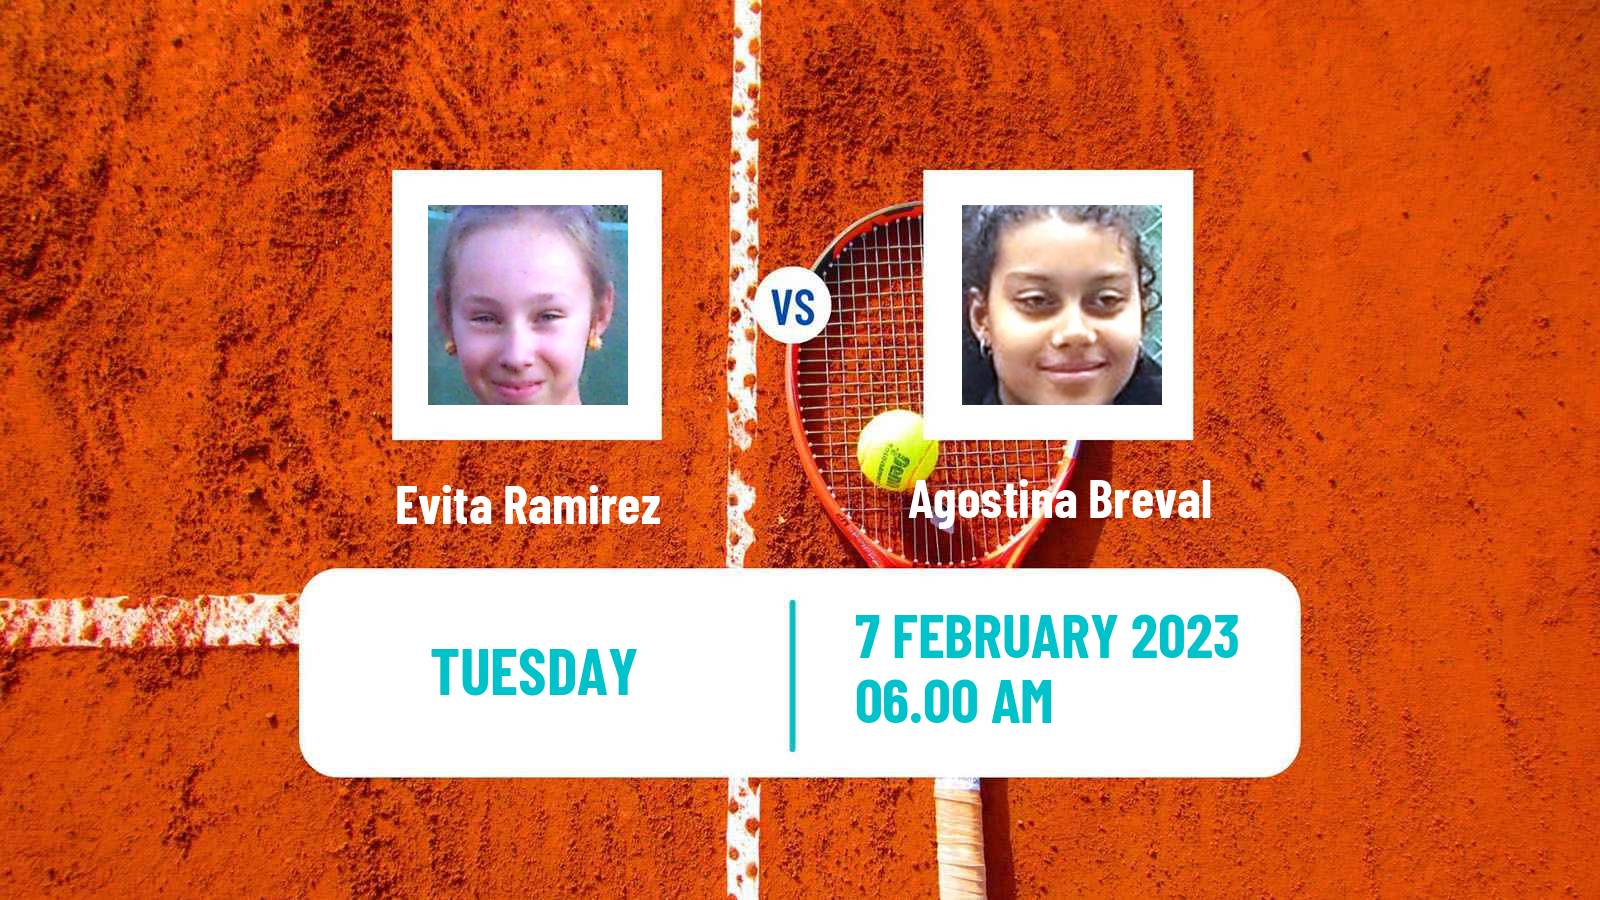 Tennis ITF Tournaments Evita Ramirez - Agostina Breval